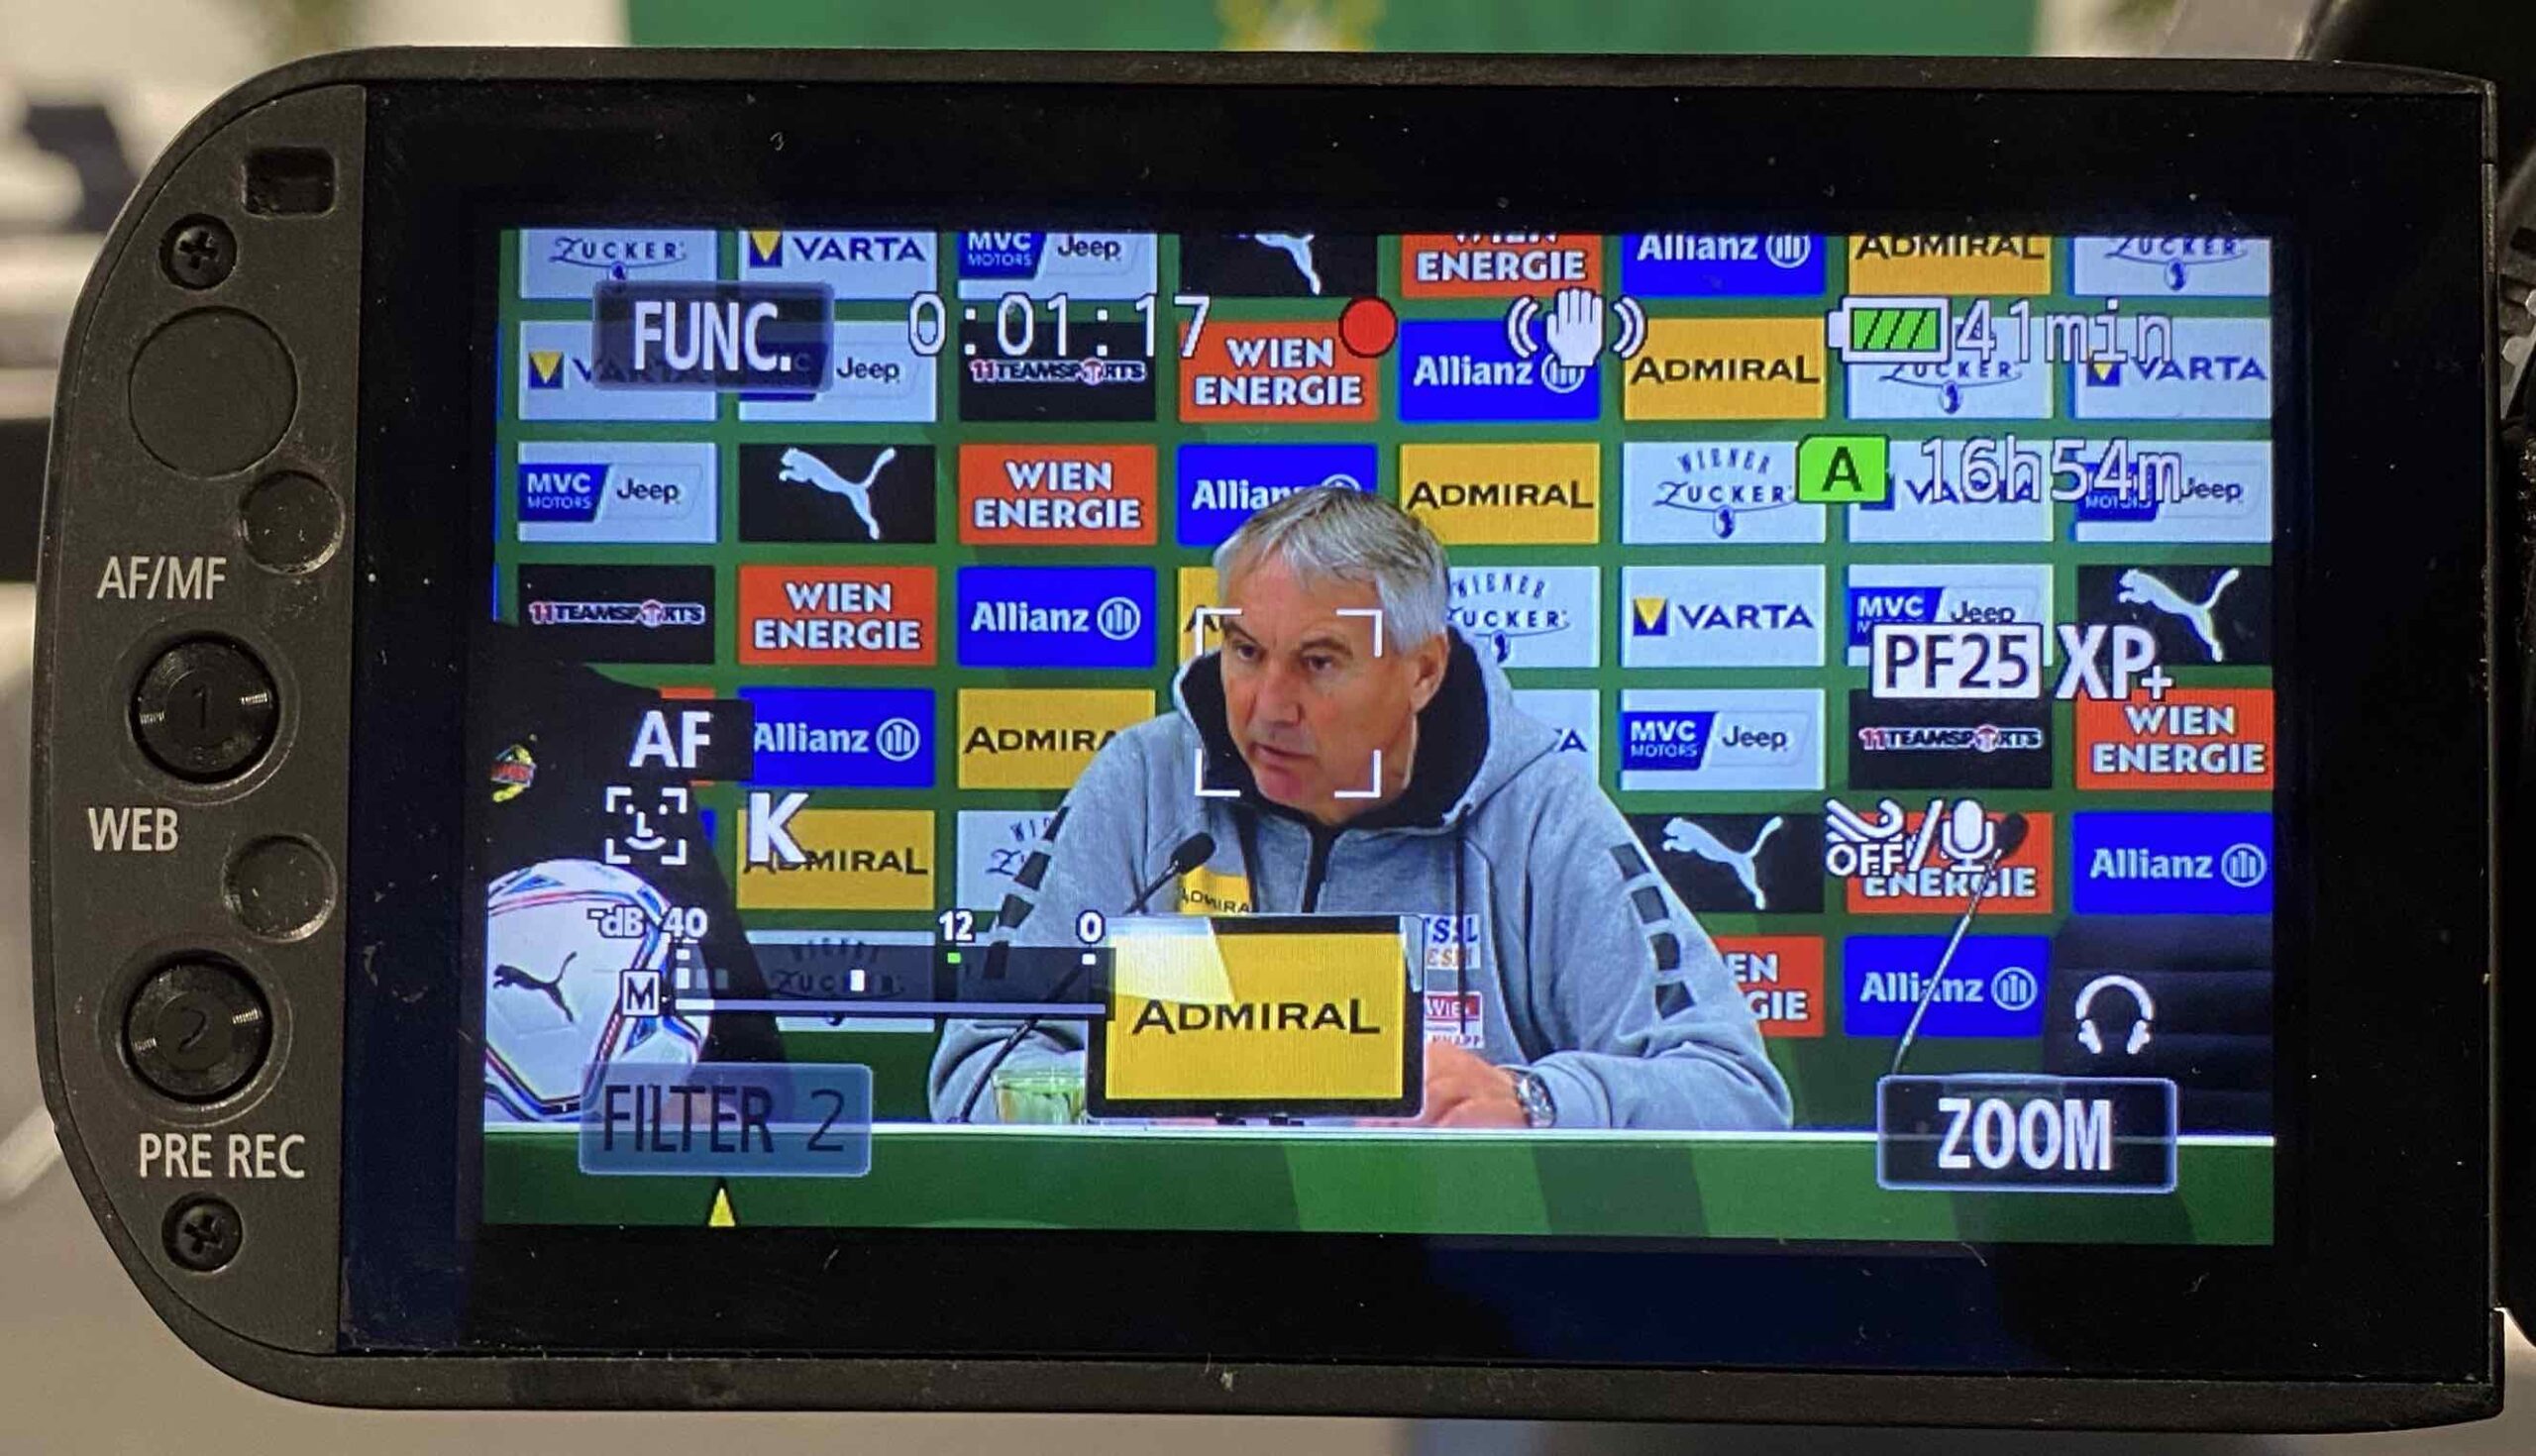 Video: Peter Pacult (Trainer SK Austria Klagenfurt) - die Pressekonferenz nach dem Spiel gegen SK Rapid Wien